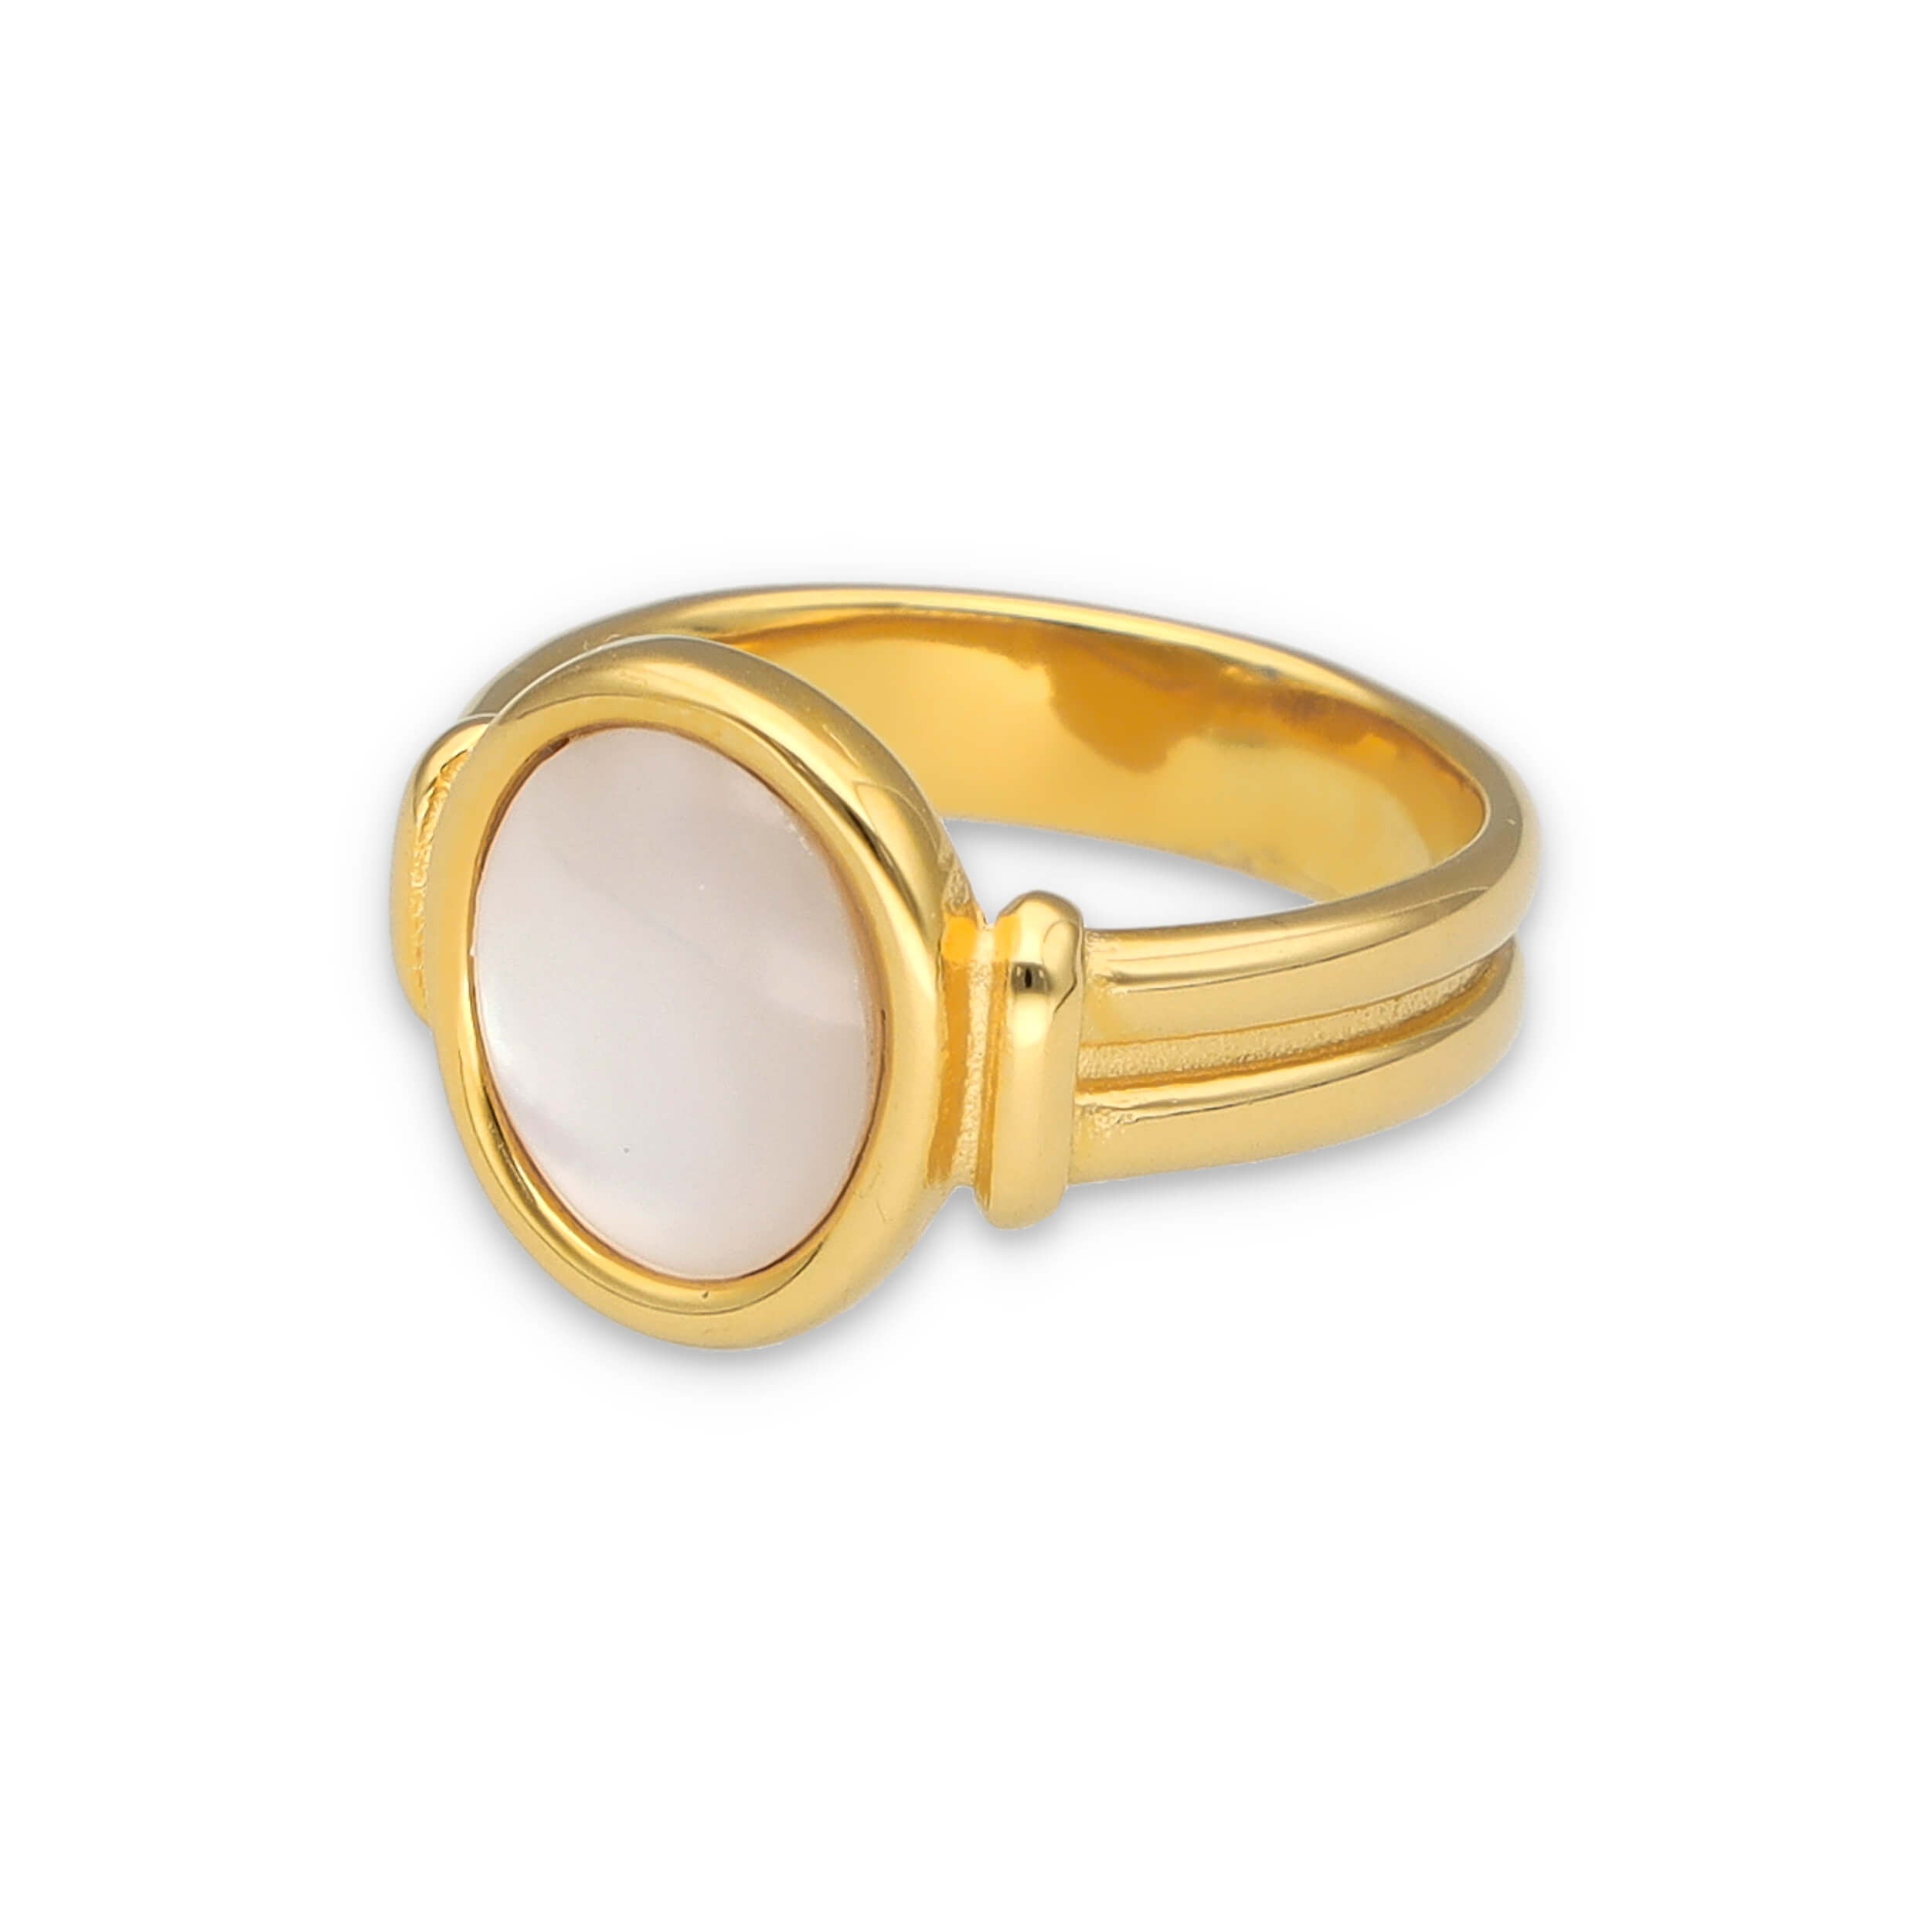 Ring aus vergoldetem Edelstahl mit ovaler Perlmuttfläche. Von Schmucktick. 